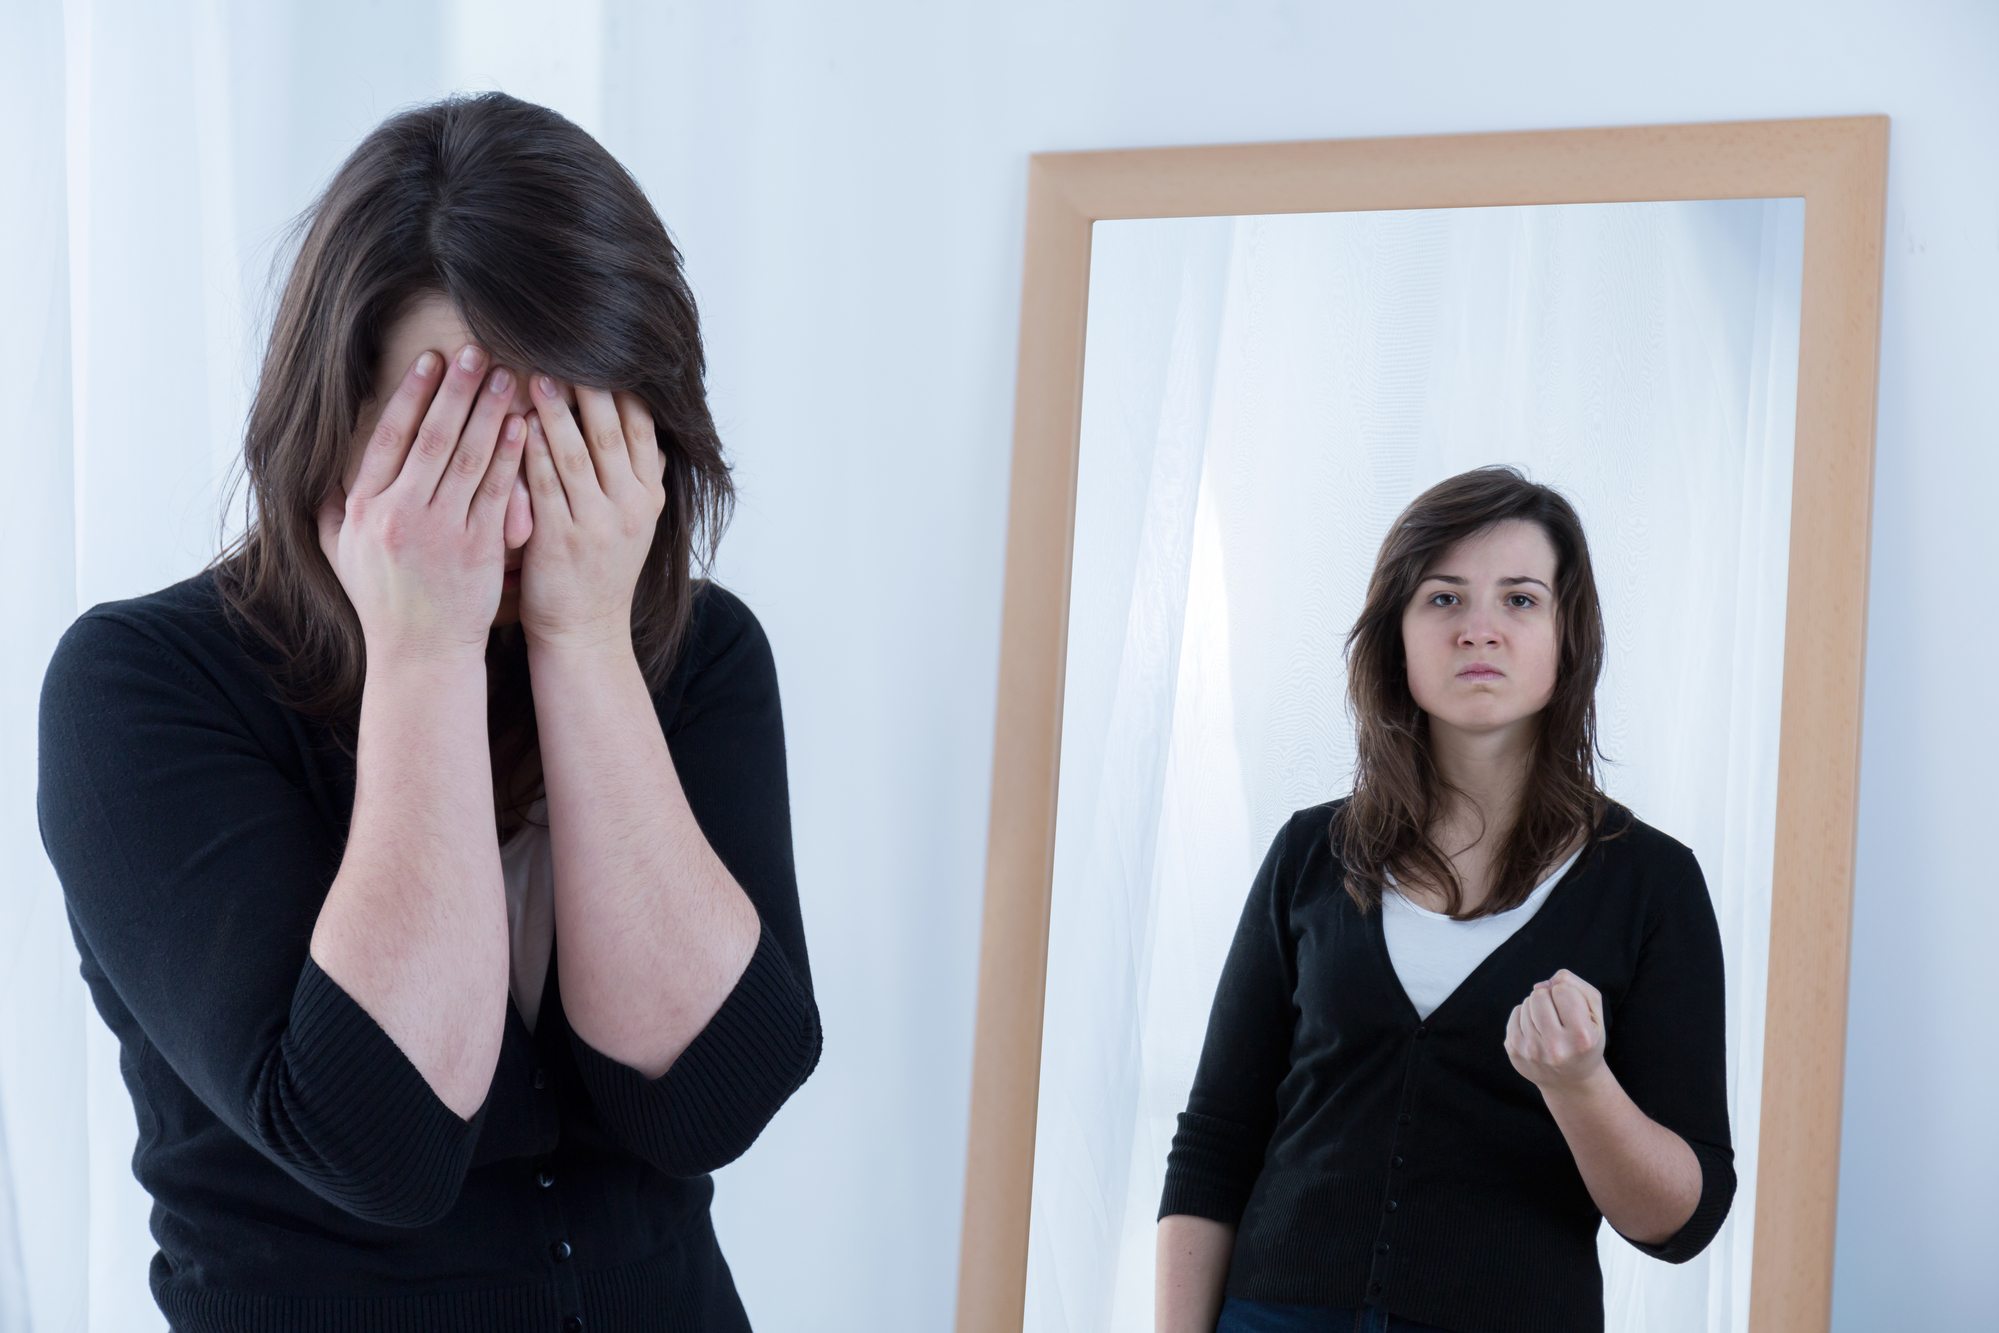 Страх быть видимой. Отражение себя в зеркале. Самокритика девушка. Разное отражение в зеркале. Низкая самооценка у женщины.